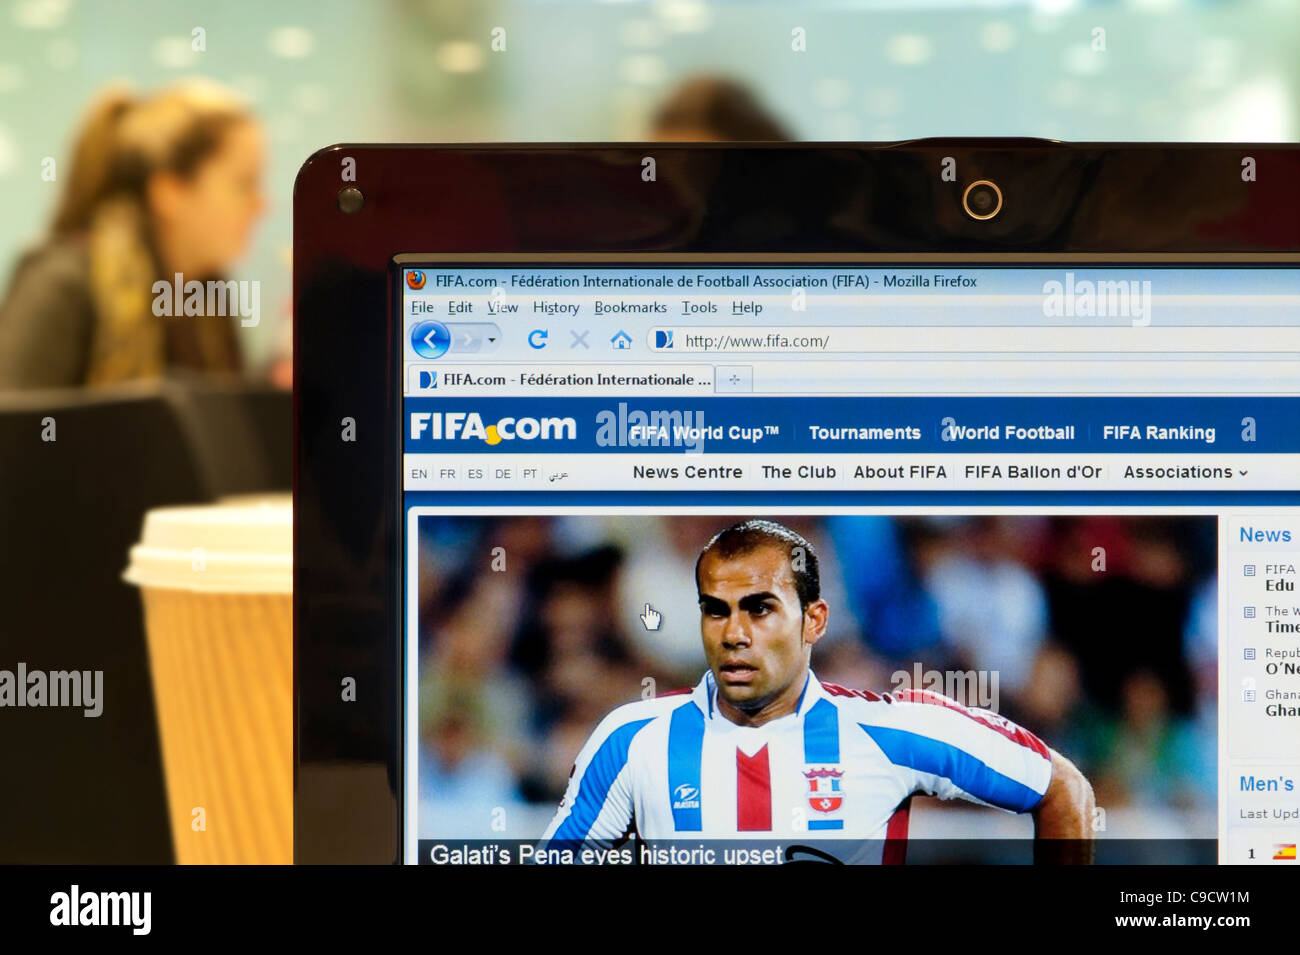 Sitio web de la FIFA rodada en un ambiente de cafetería (sólo para uso editorial: -print, televisión, e-book editorial y sitio web). Foto de stock